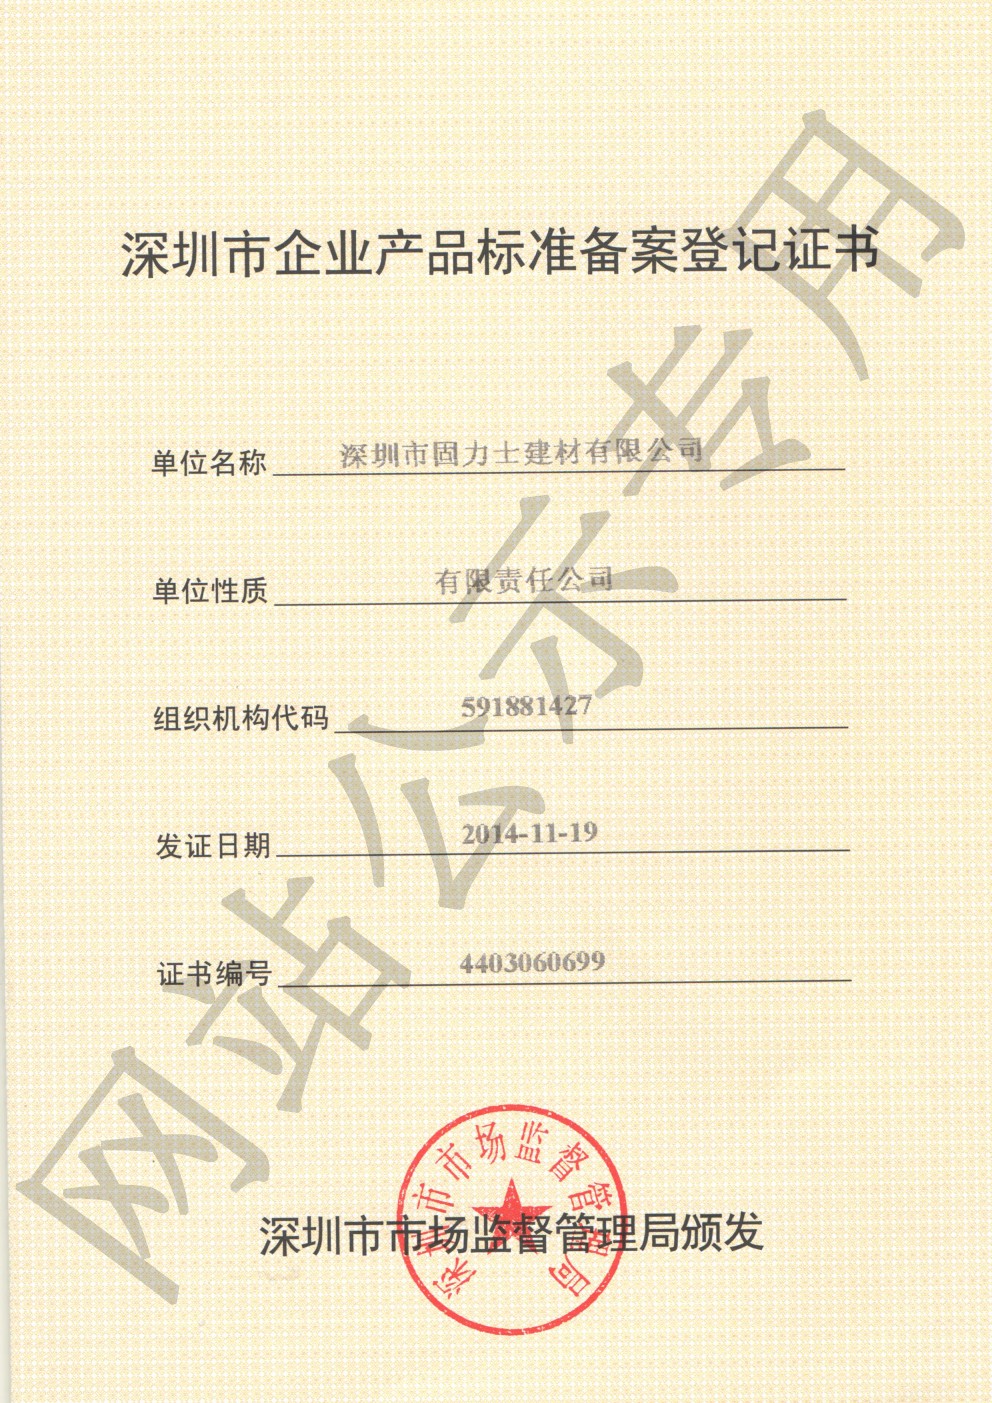 澄迈企业产品标准登记证书